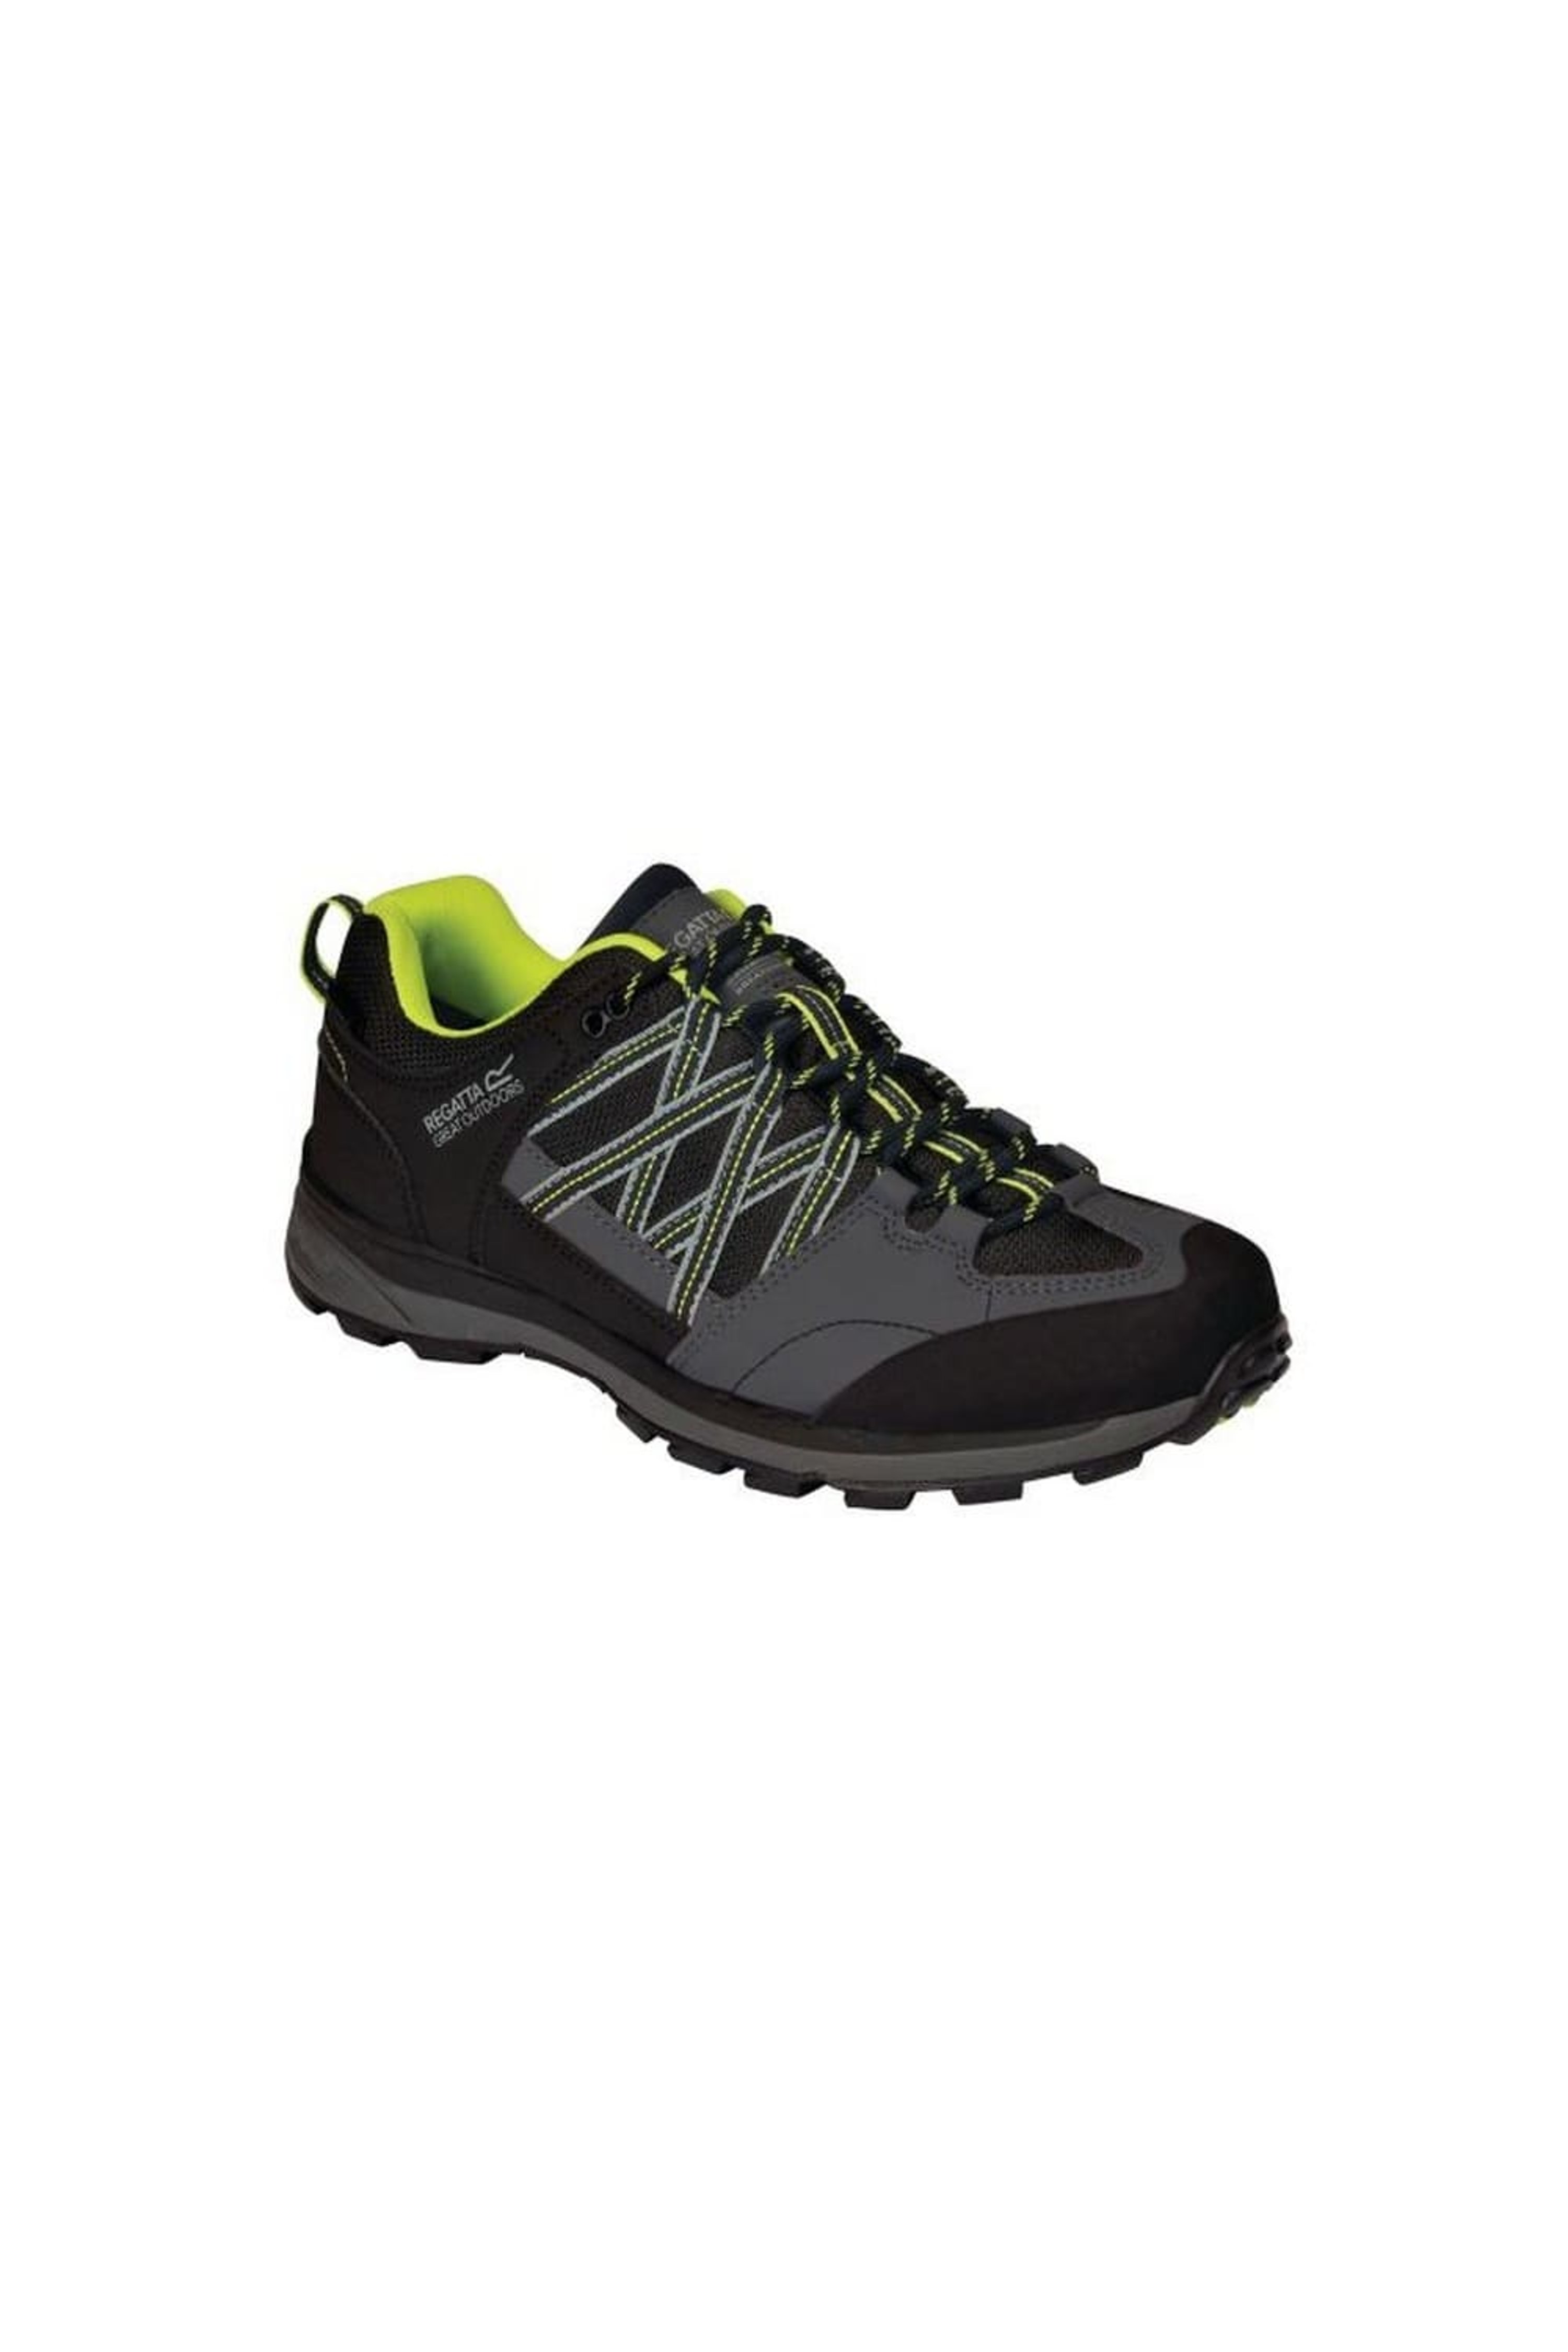 Regatta samaris II Low Hiking Shoes Trekking Shoes Hiking Shoes Waterproof 